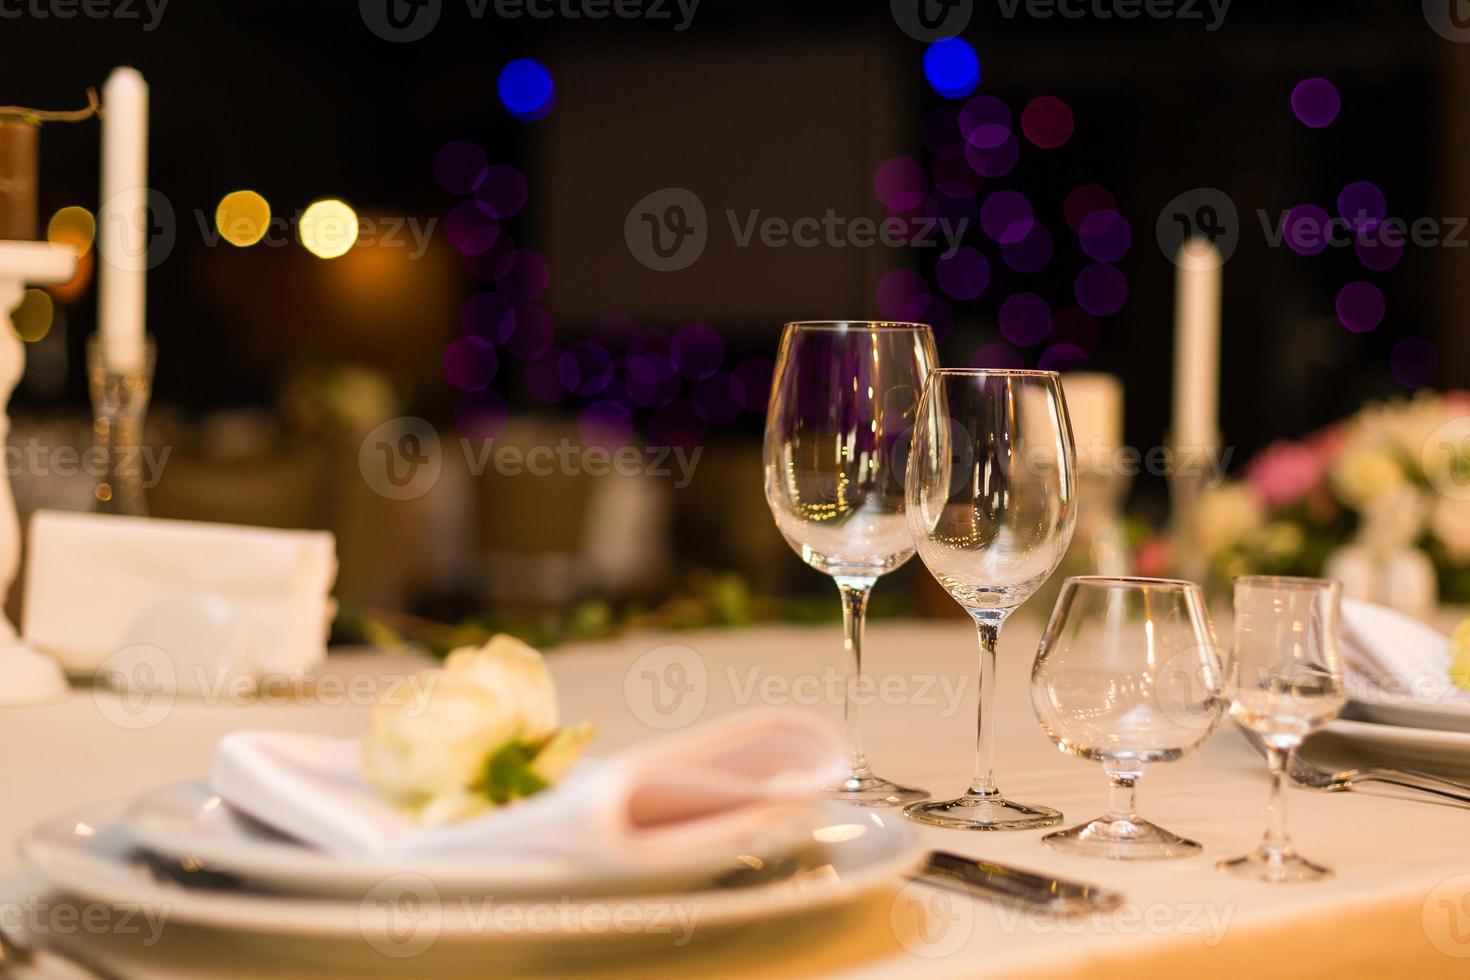 mooi tafel instelling met serviesgoed en bloemen voor een partij, bruiloft ontvangst of andere feestelijk evenement. glaswerk en bestek voor verzorgd evenement diner. foto